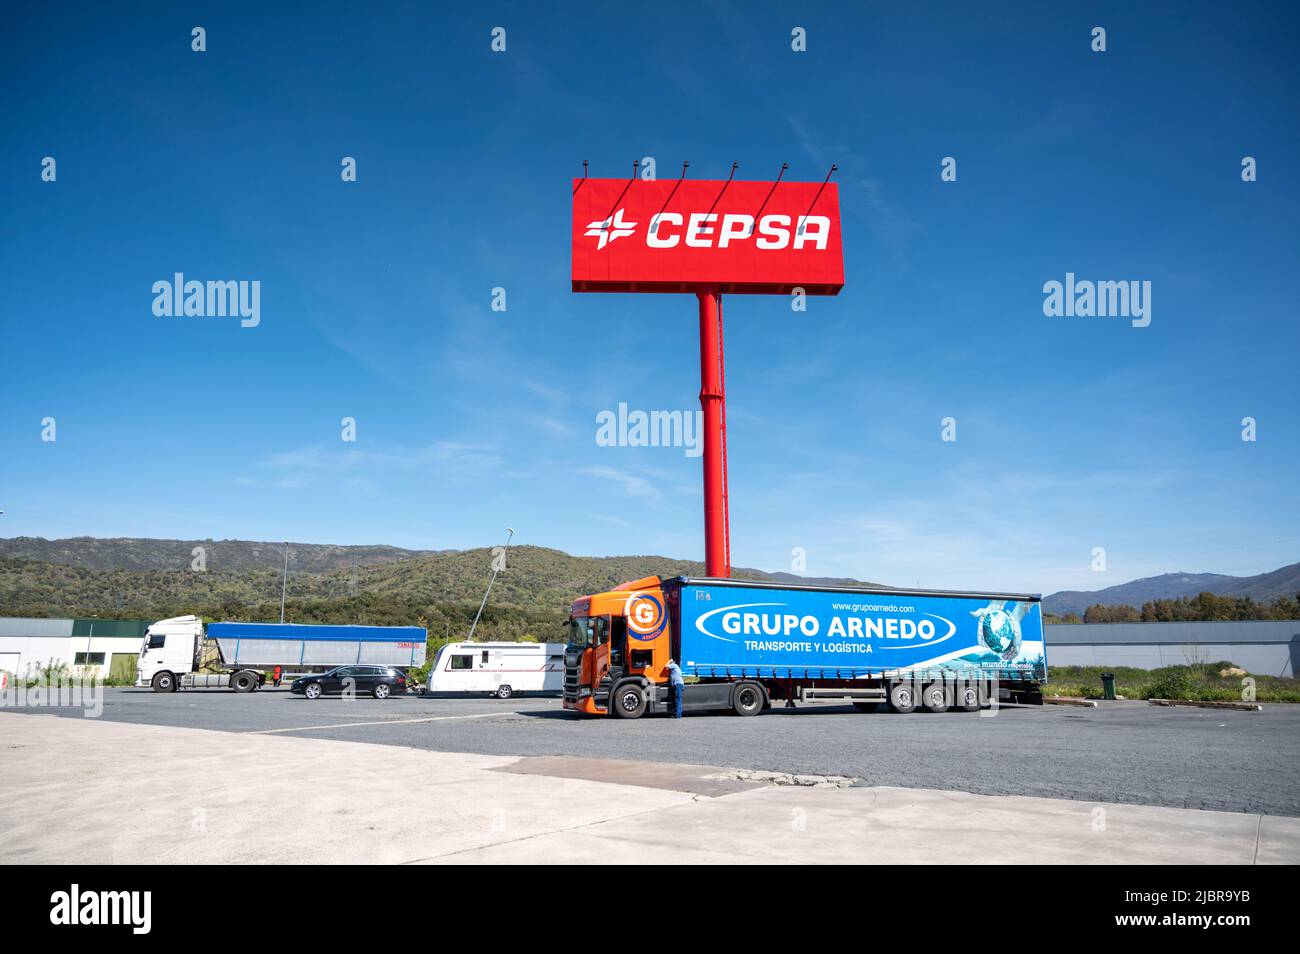 Ein rotes CEPSA-Werbeschild in Spanien, Europa. Stockfoto